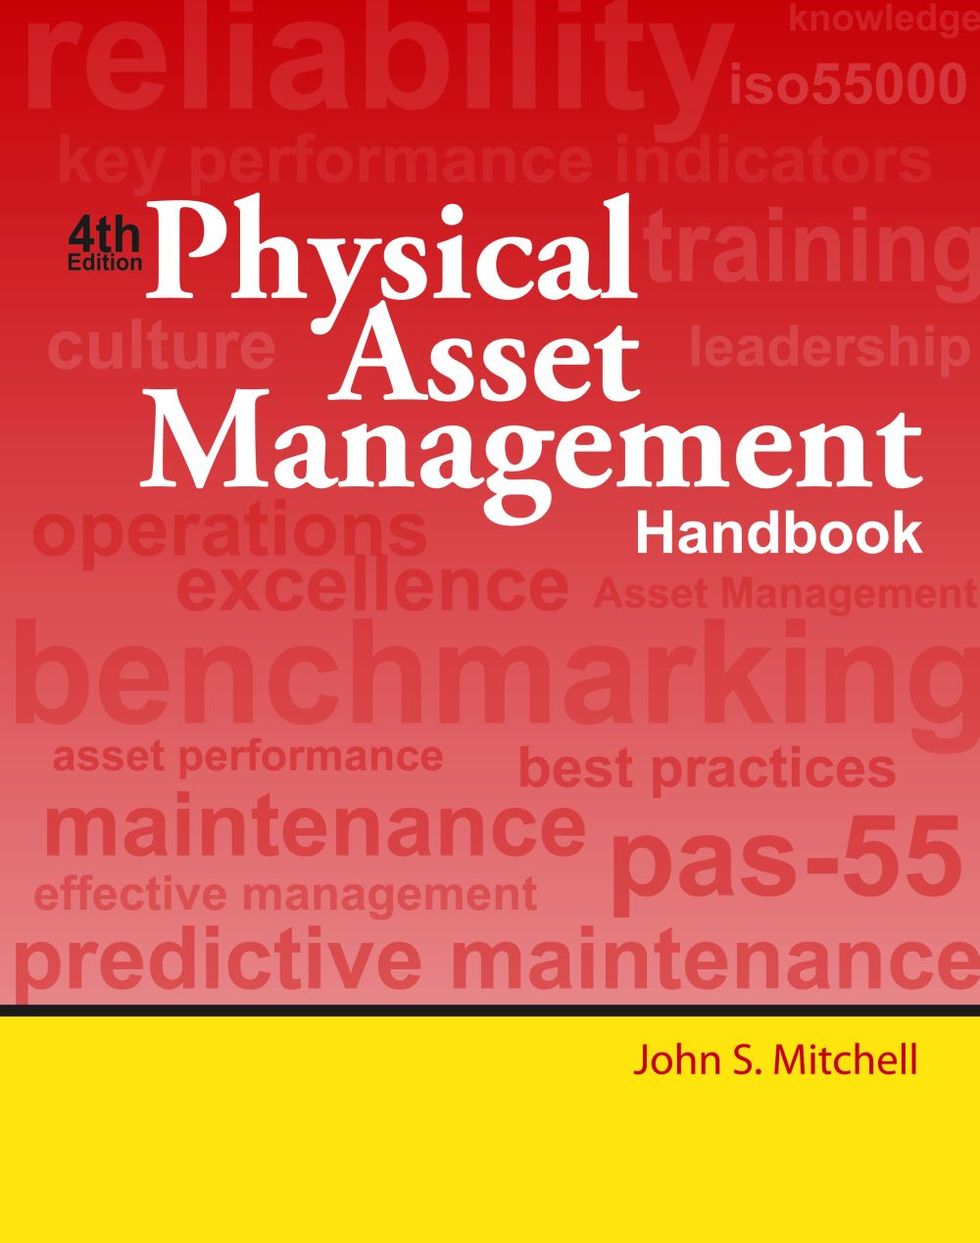  Physical Asset Management Handbook 